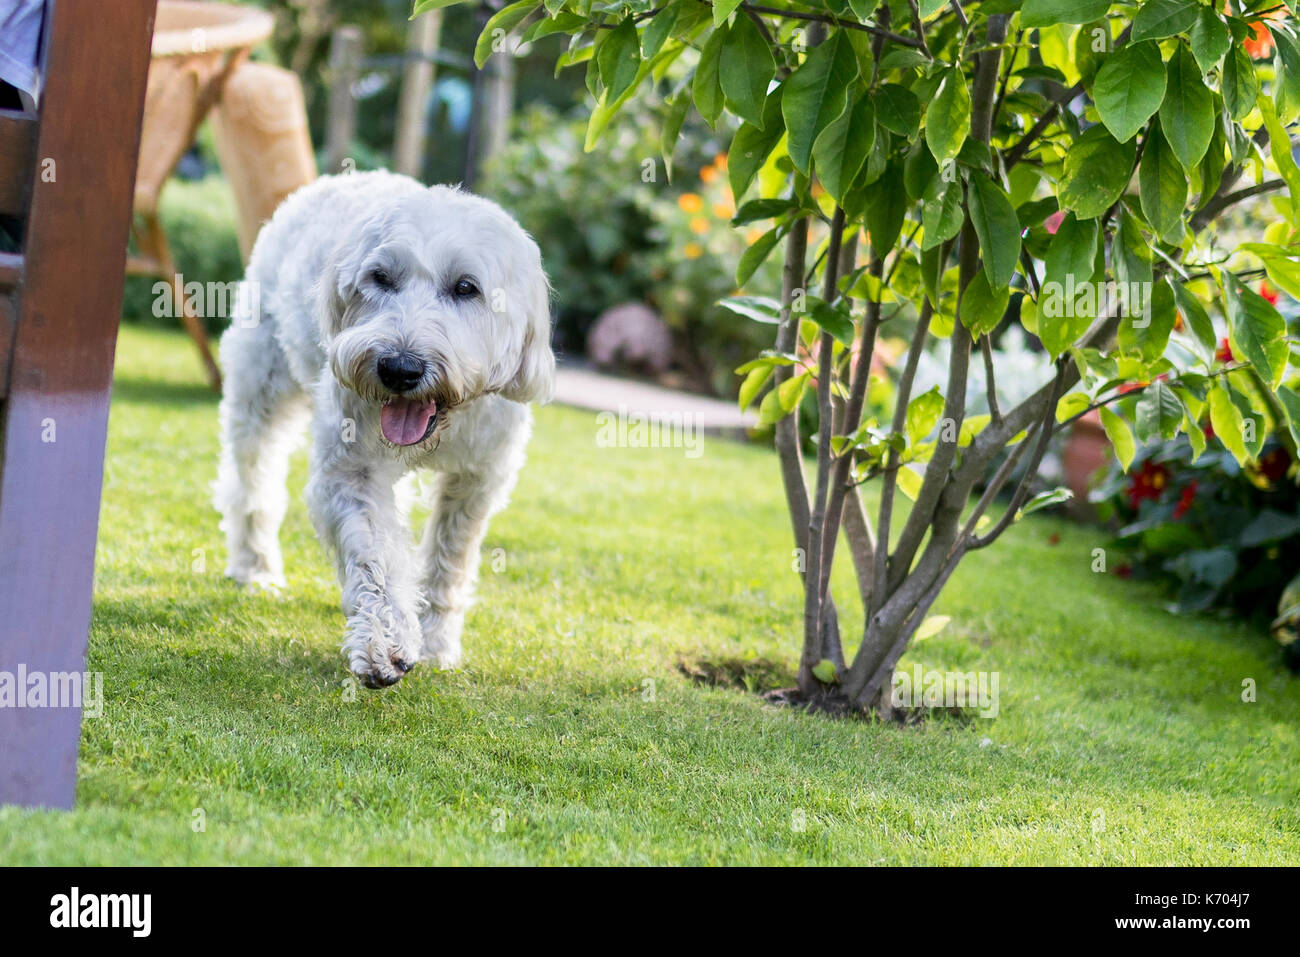 Belle et ludique aux cheveux blanc Terrier Wheaten exécute joyeusement autour du jardin Banque D'Images